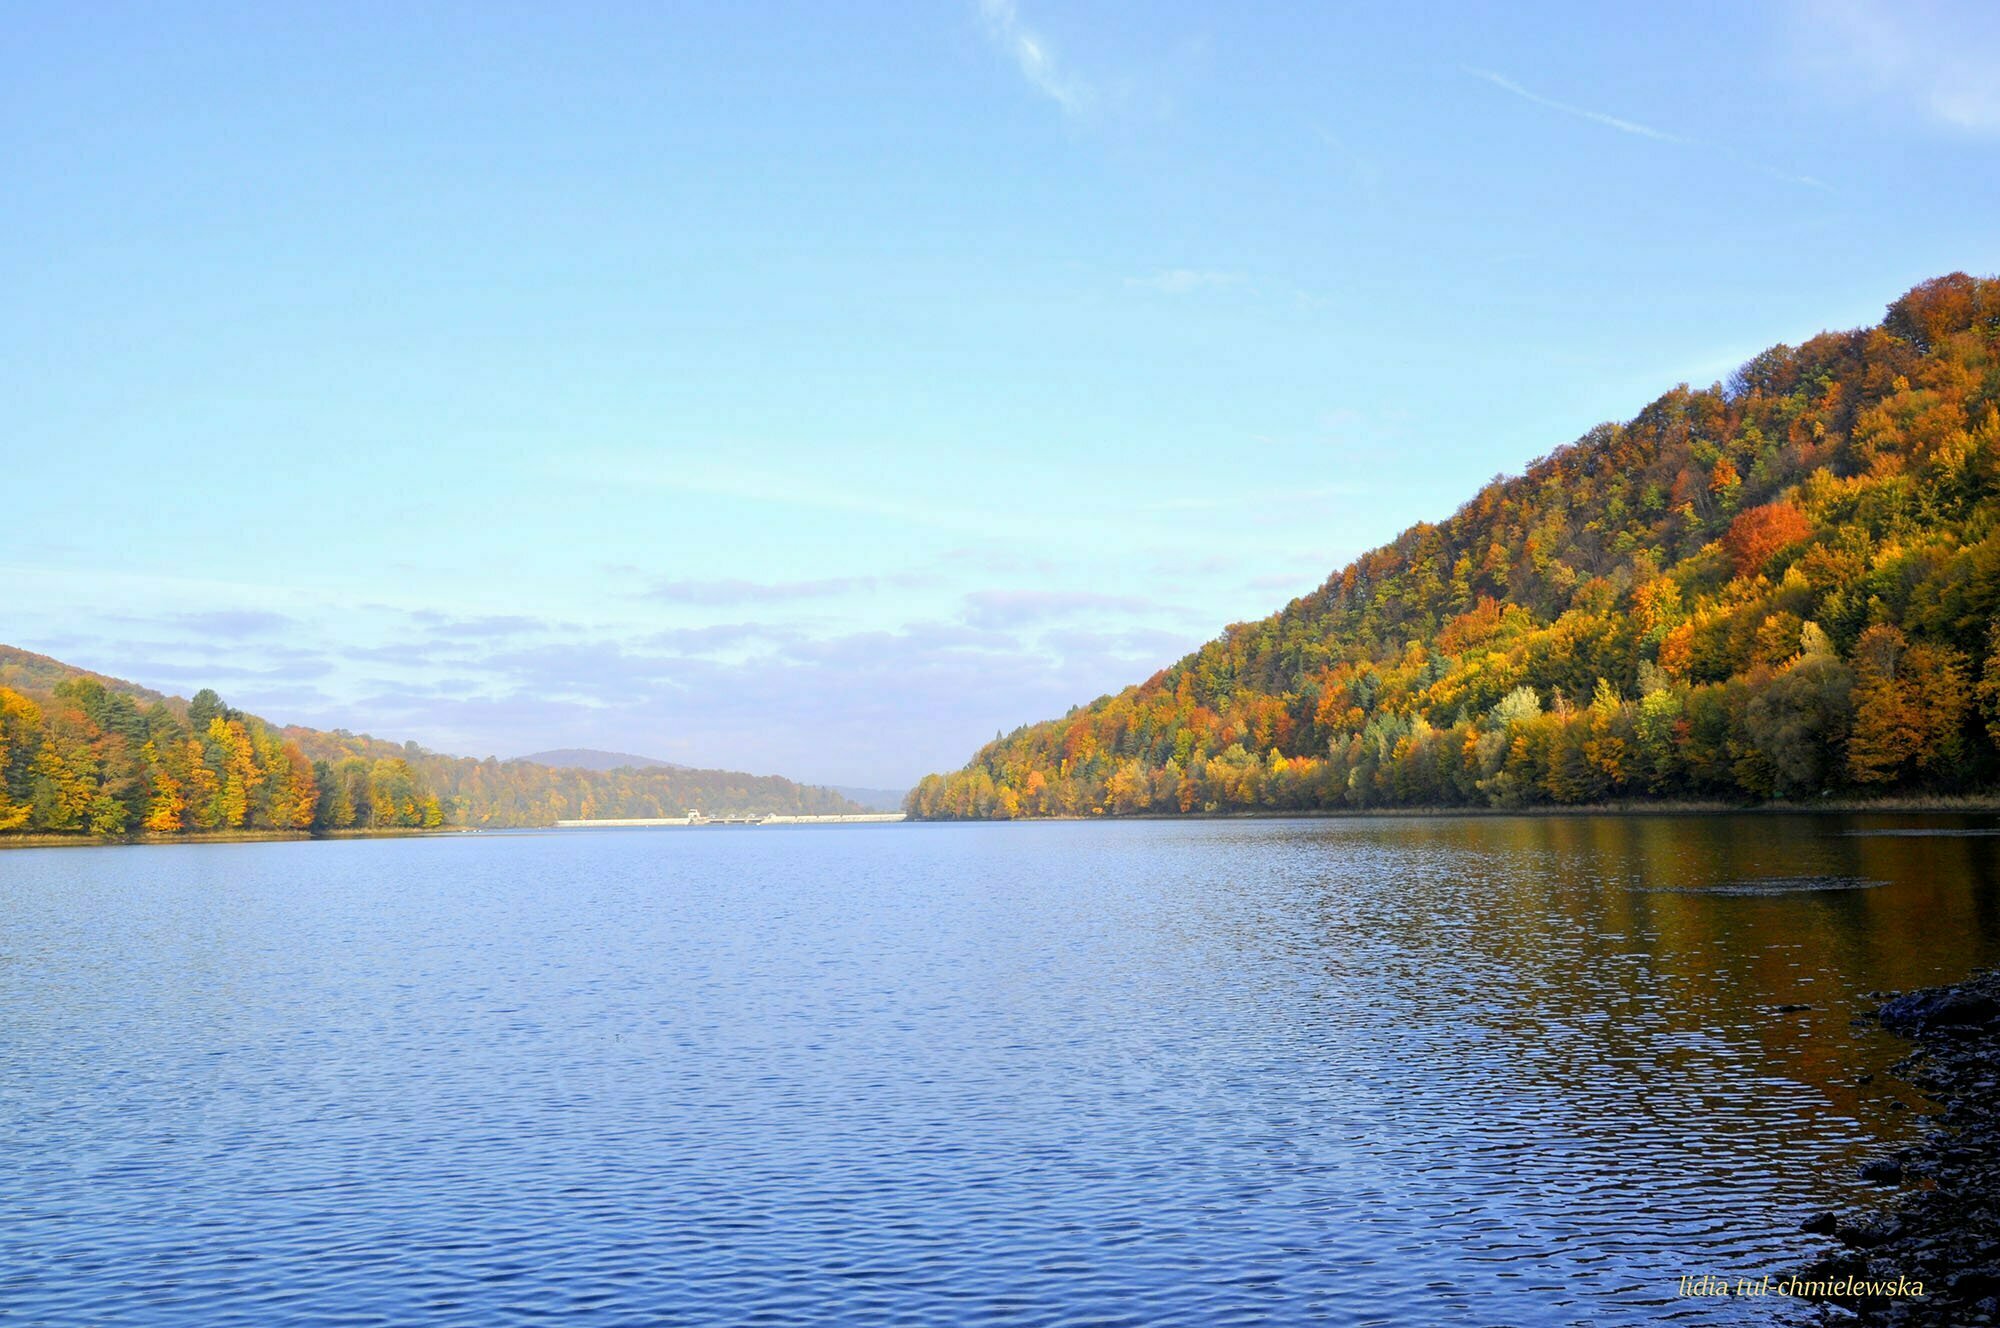 Jezioro Myczkowskie / fot. Lidia Tul-Chmielewska